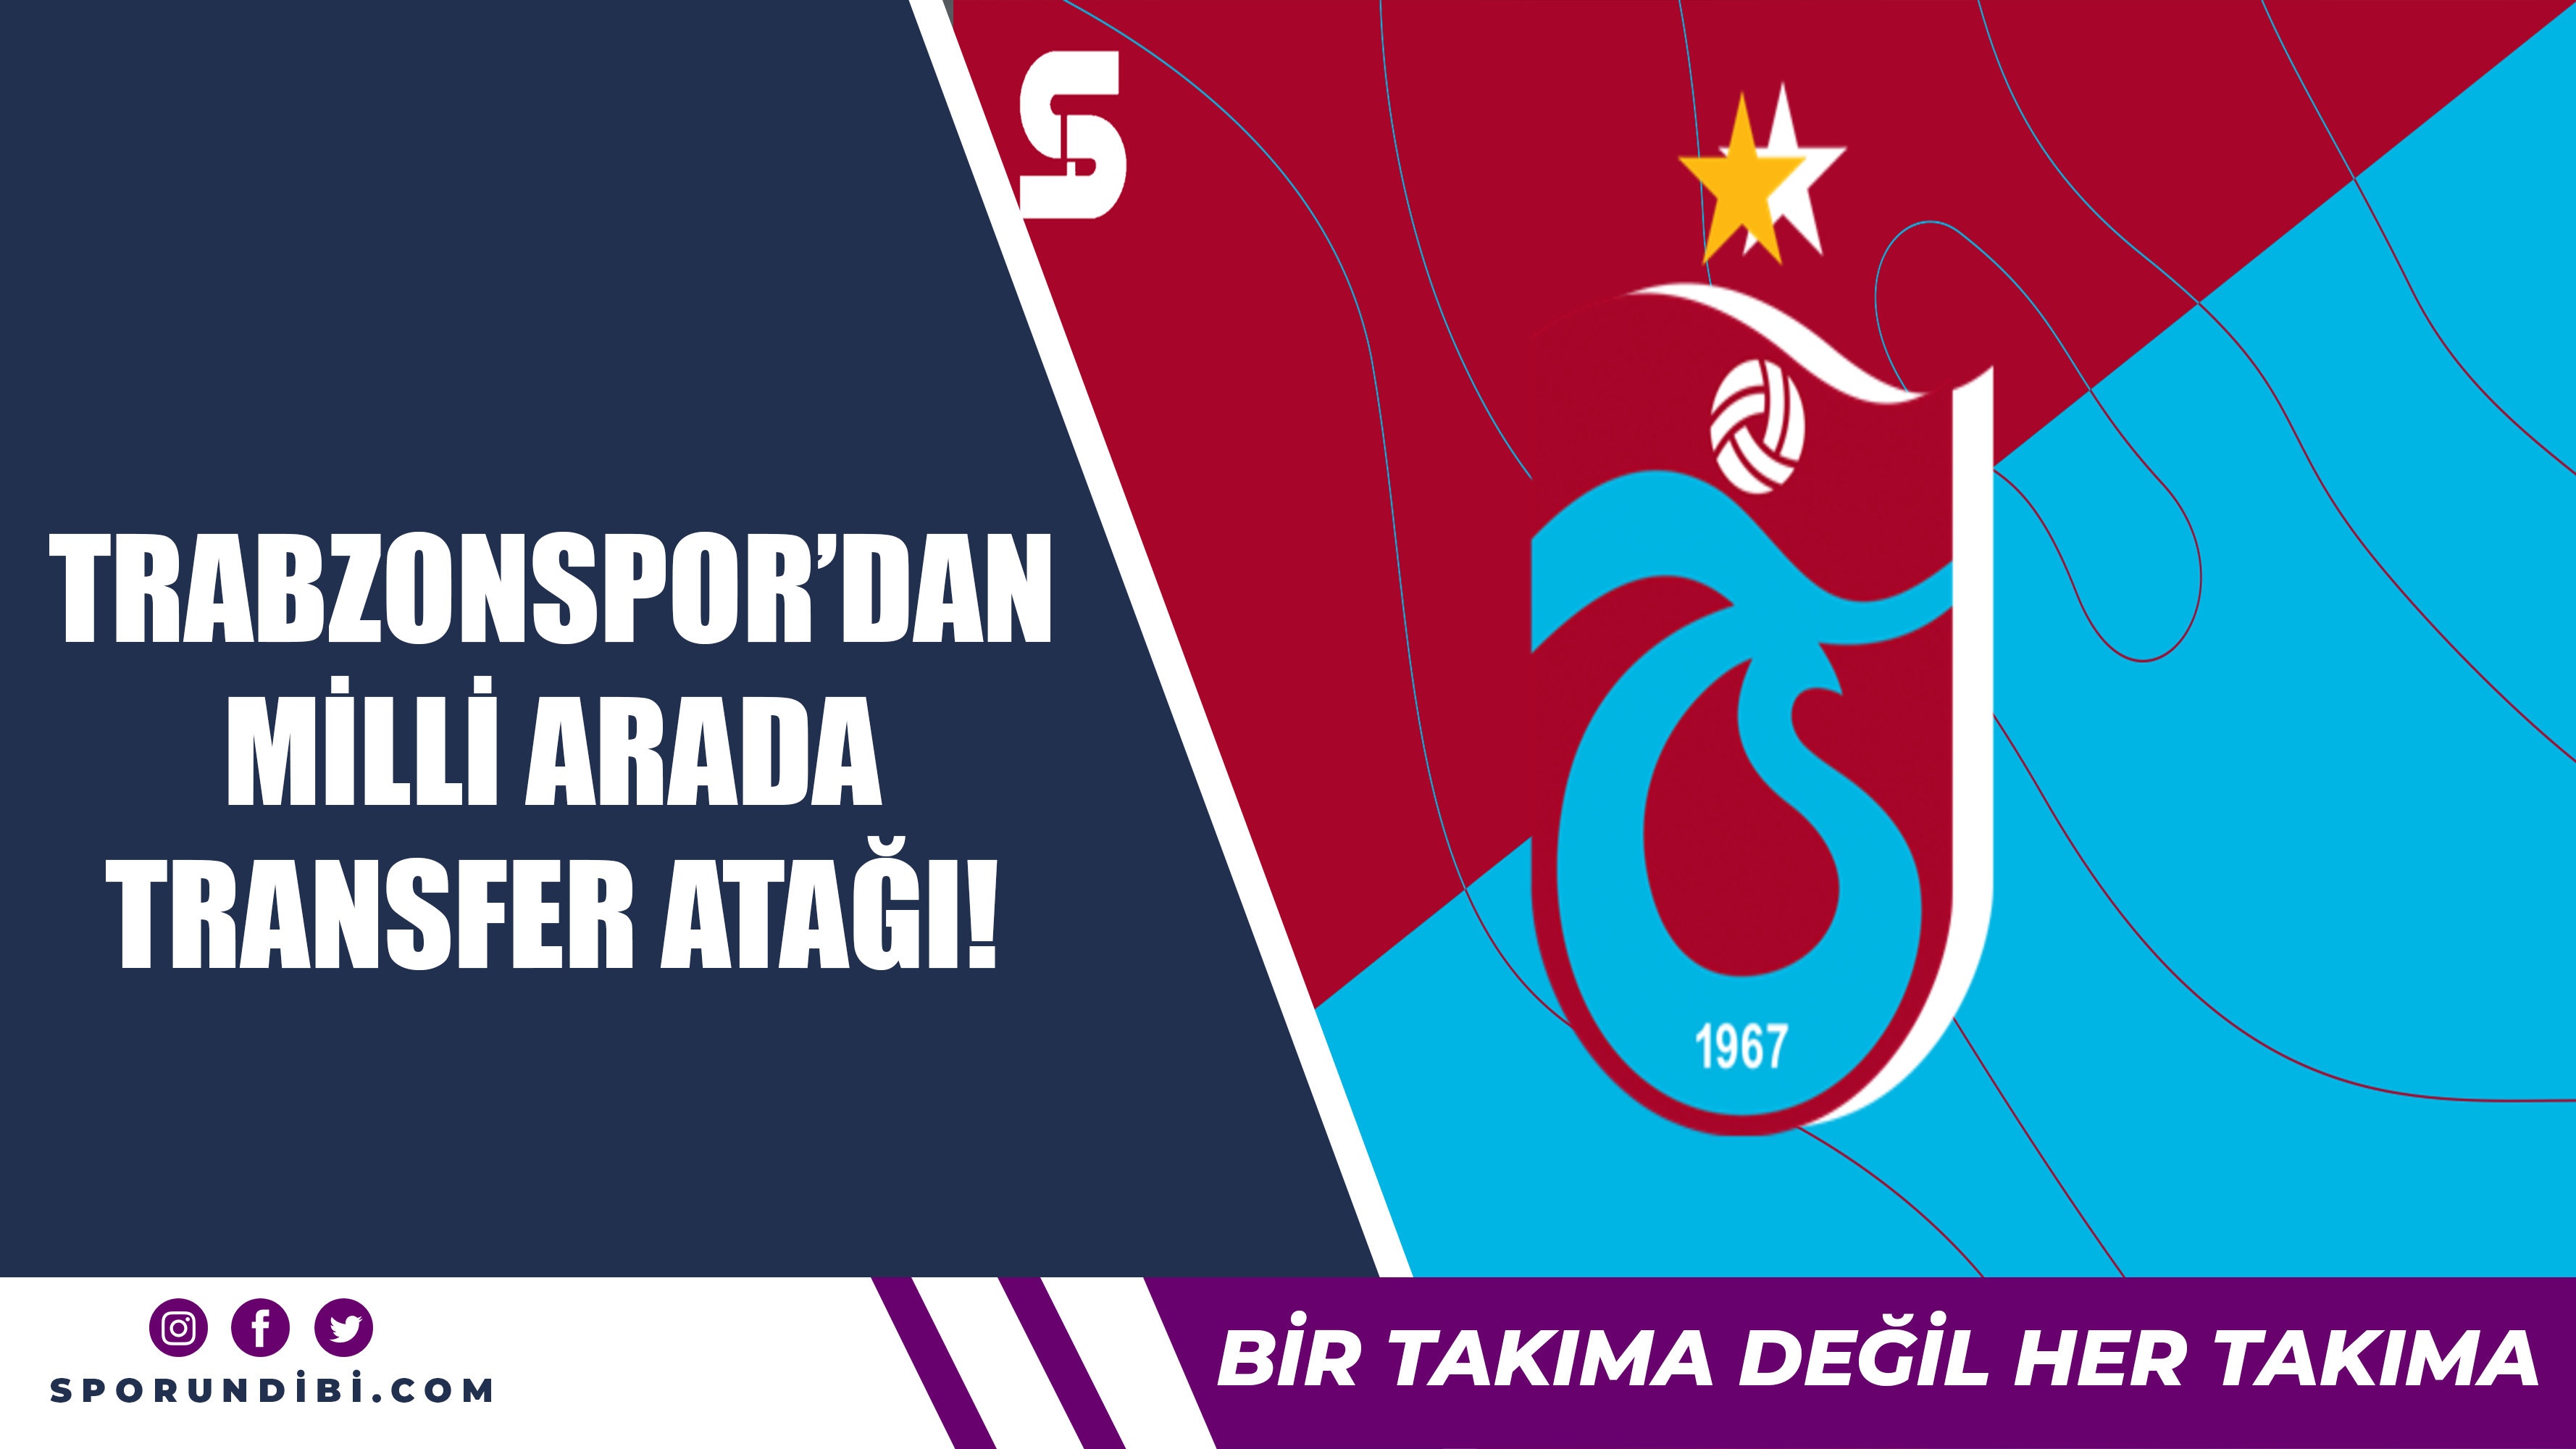 Trabzonspor'dan milli arada transfer atağı!